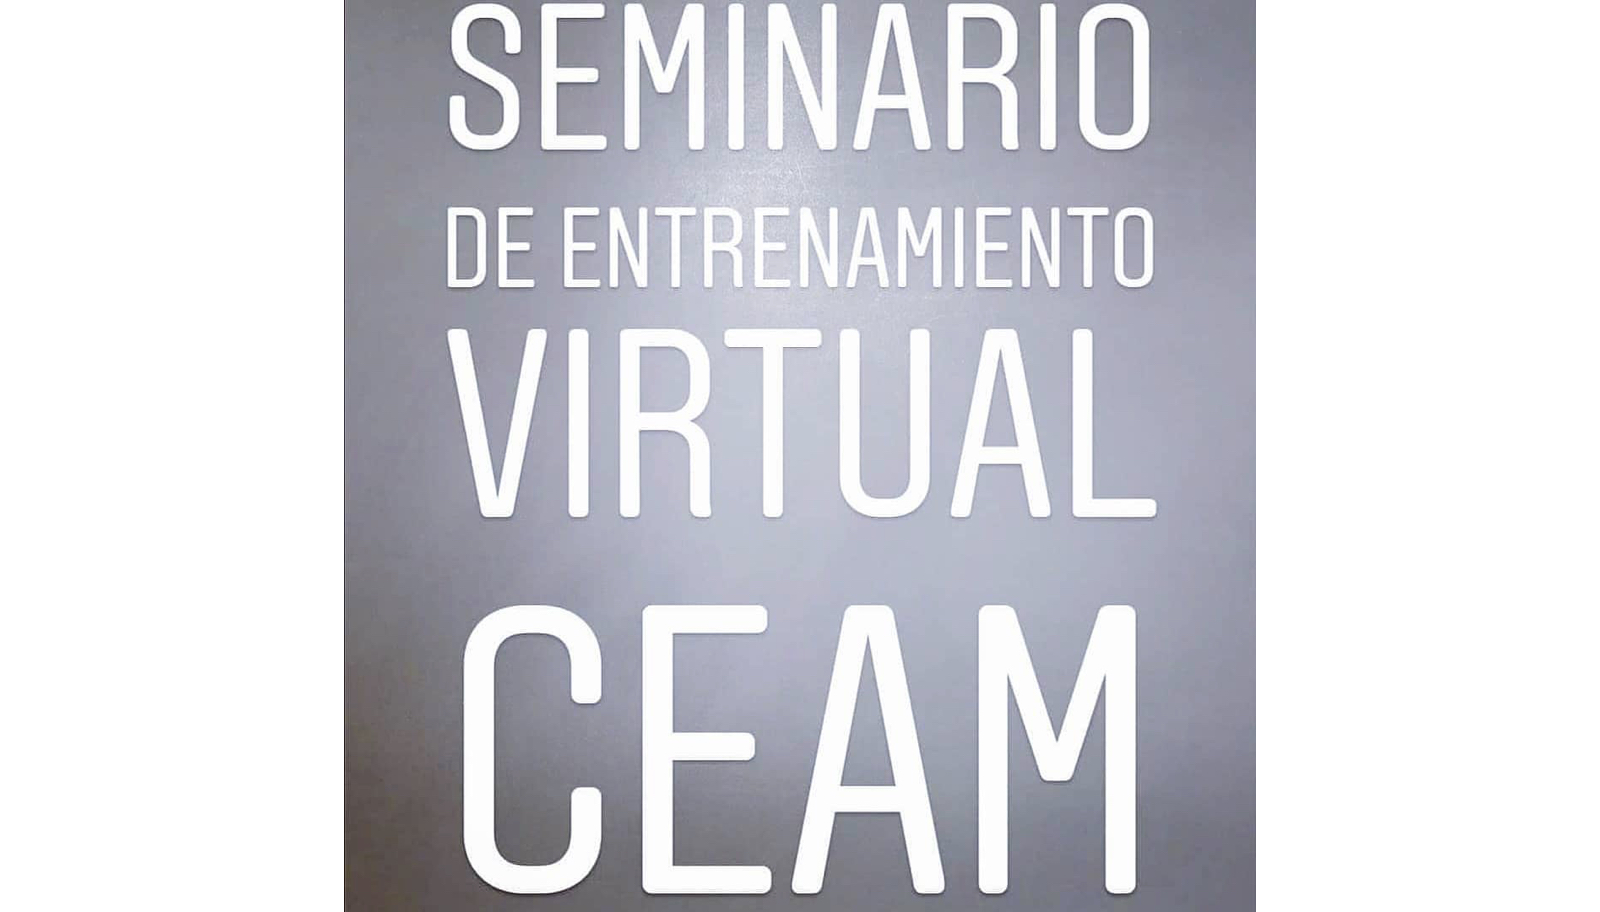 El fundador de Powerinstep participó en el seminario de entrenamiento virtual CEAM